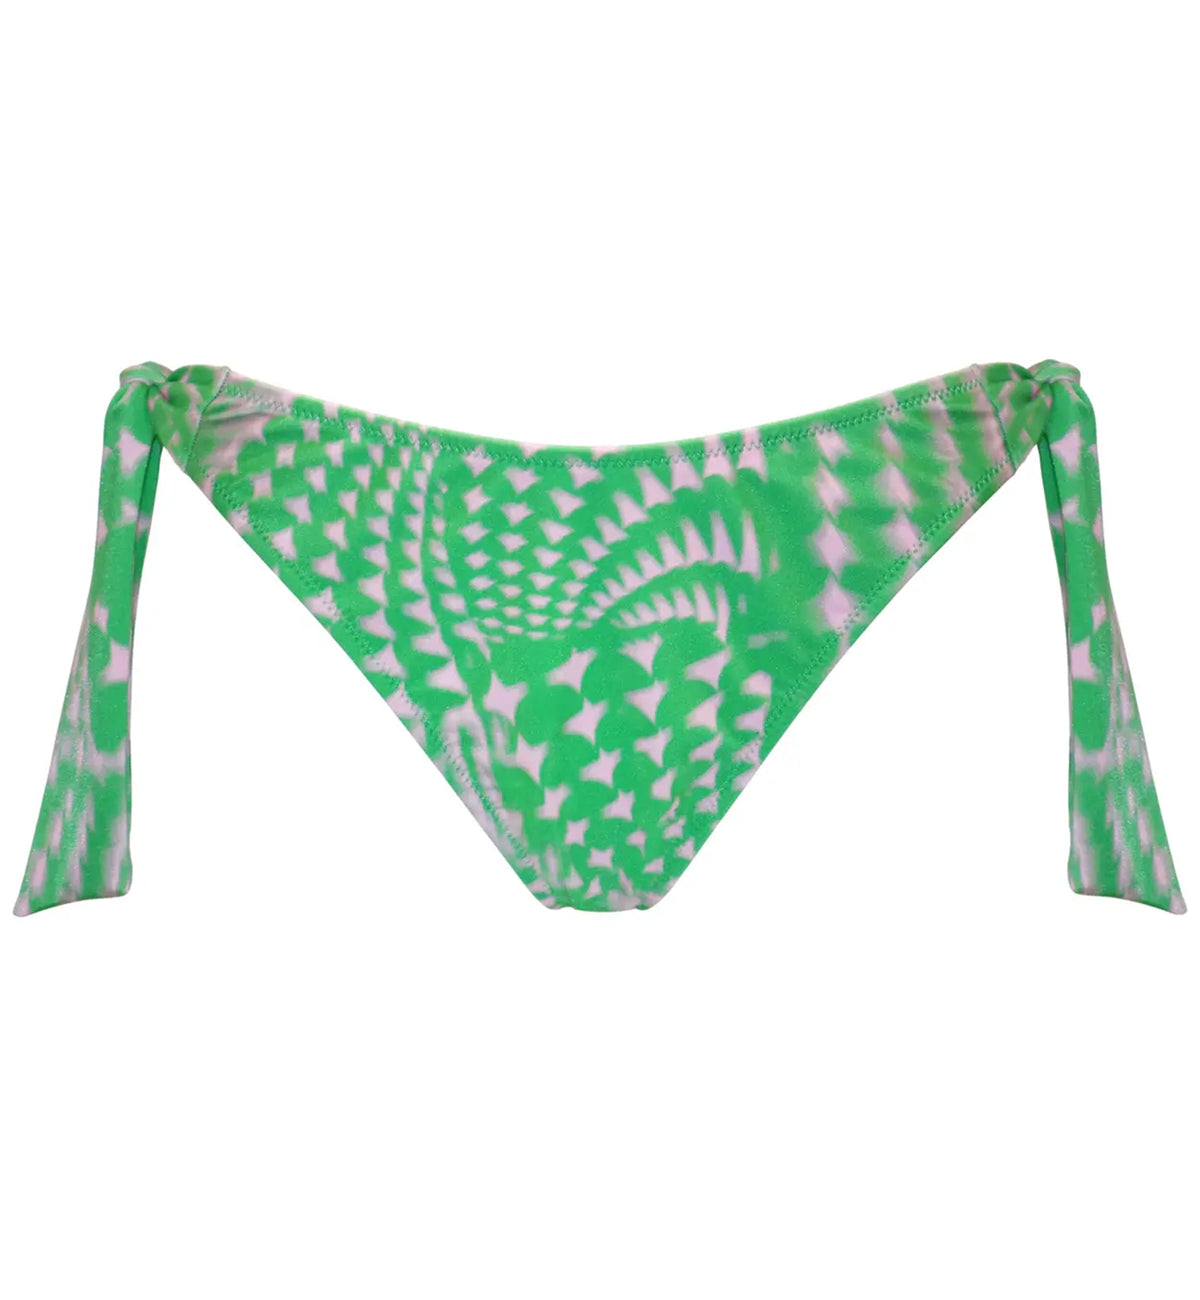 Pour Moi Portofino High Leg Tie Side Swim Brief (29702),XS,Green/Pink - Green/Pink,XS